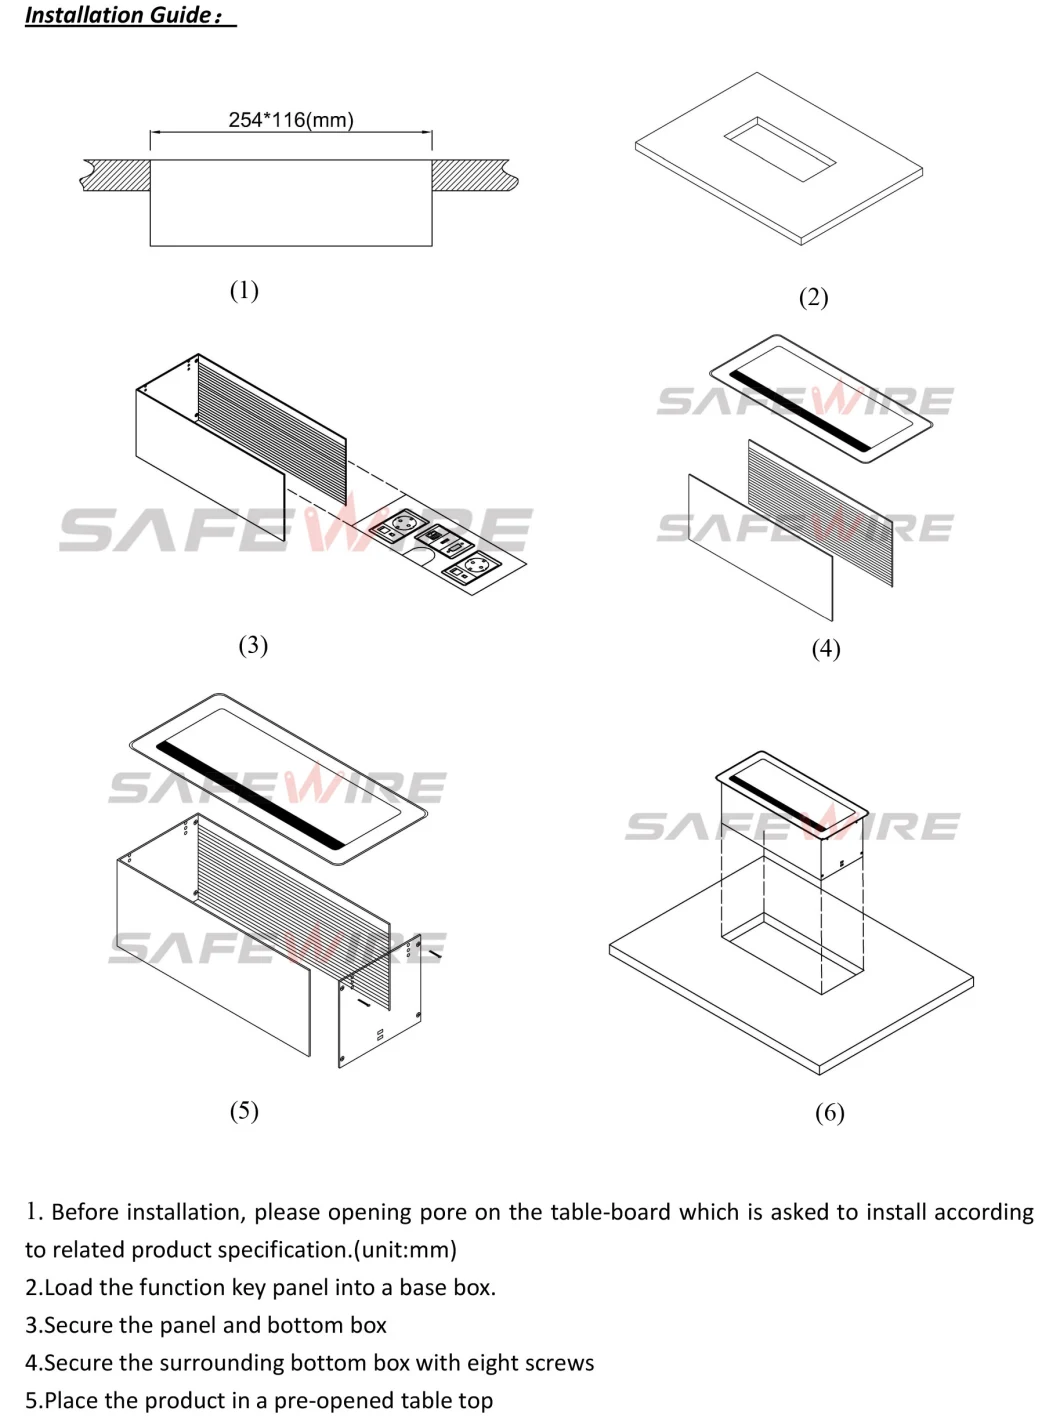 Black Color Table Mount Socket /Under Desk Modules /Electrical Outlet